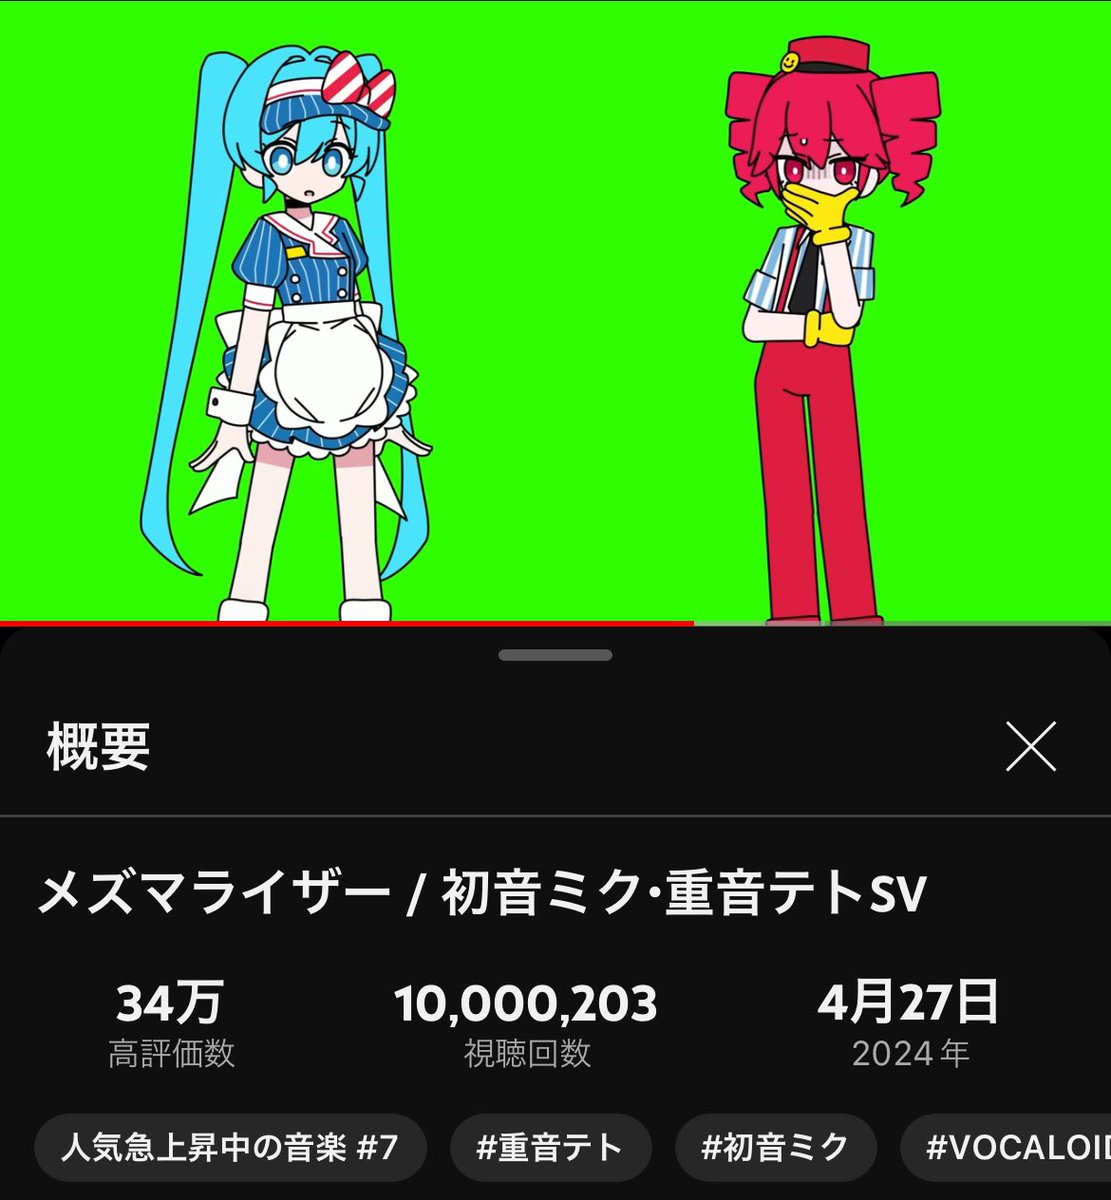 『メズマライザー』 YouTube1000万再生ありがとうございます🎉